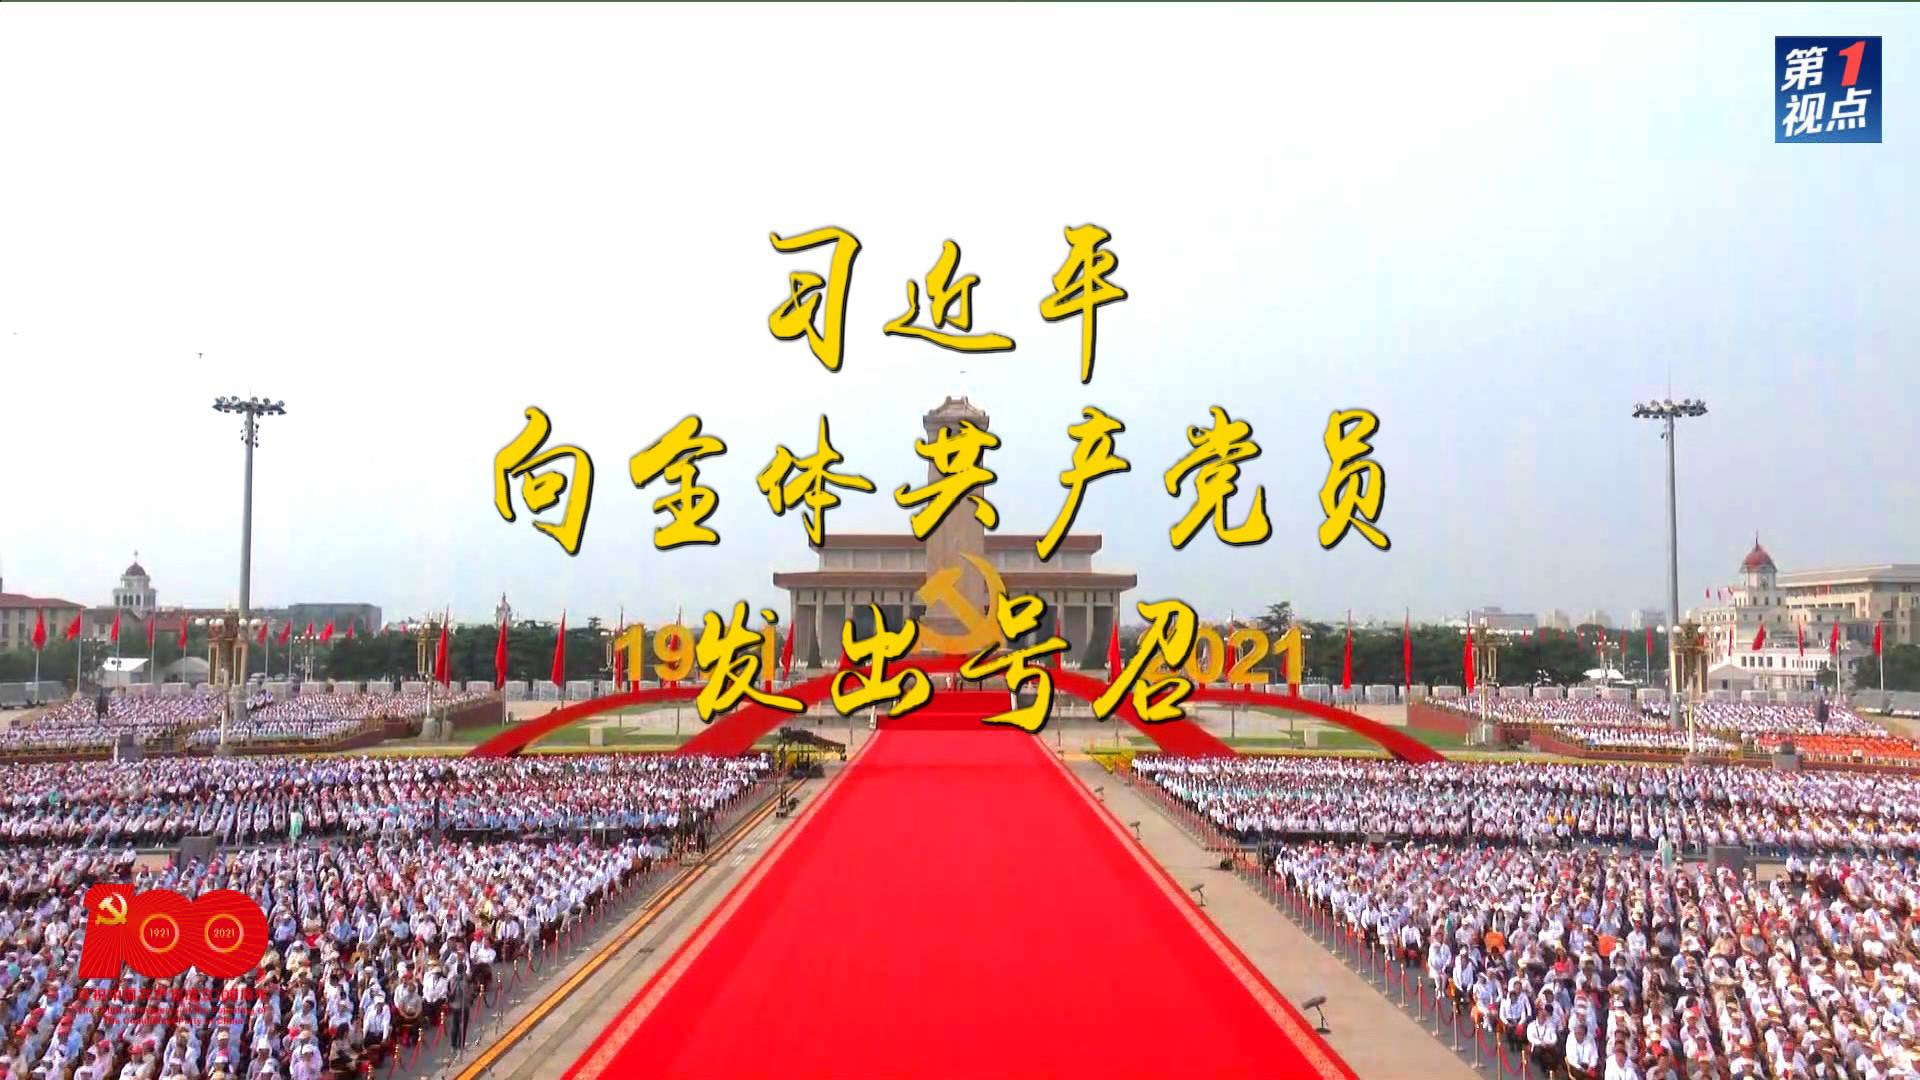 历史交汇点上的庄严宣告——庆祝中国共产党成立100周年大会侧记